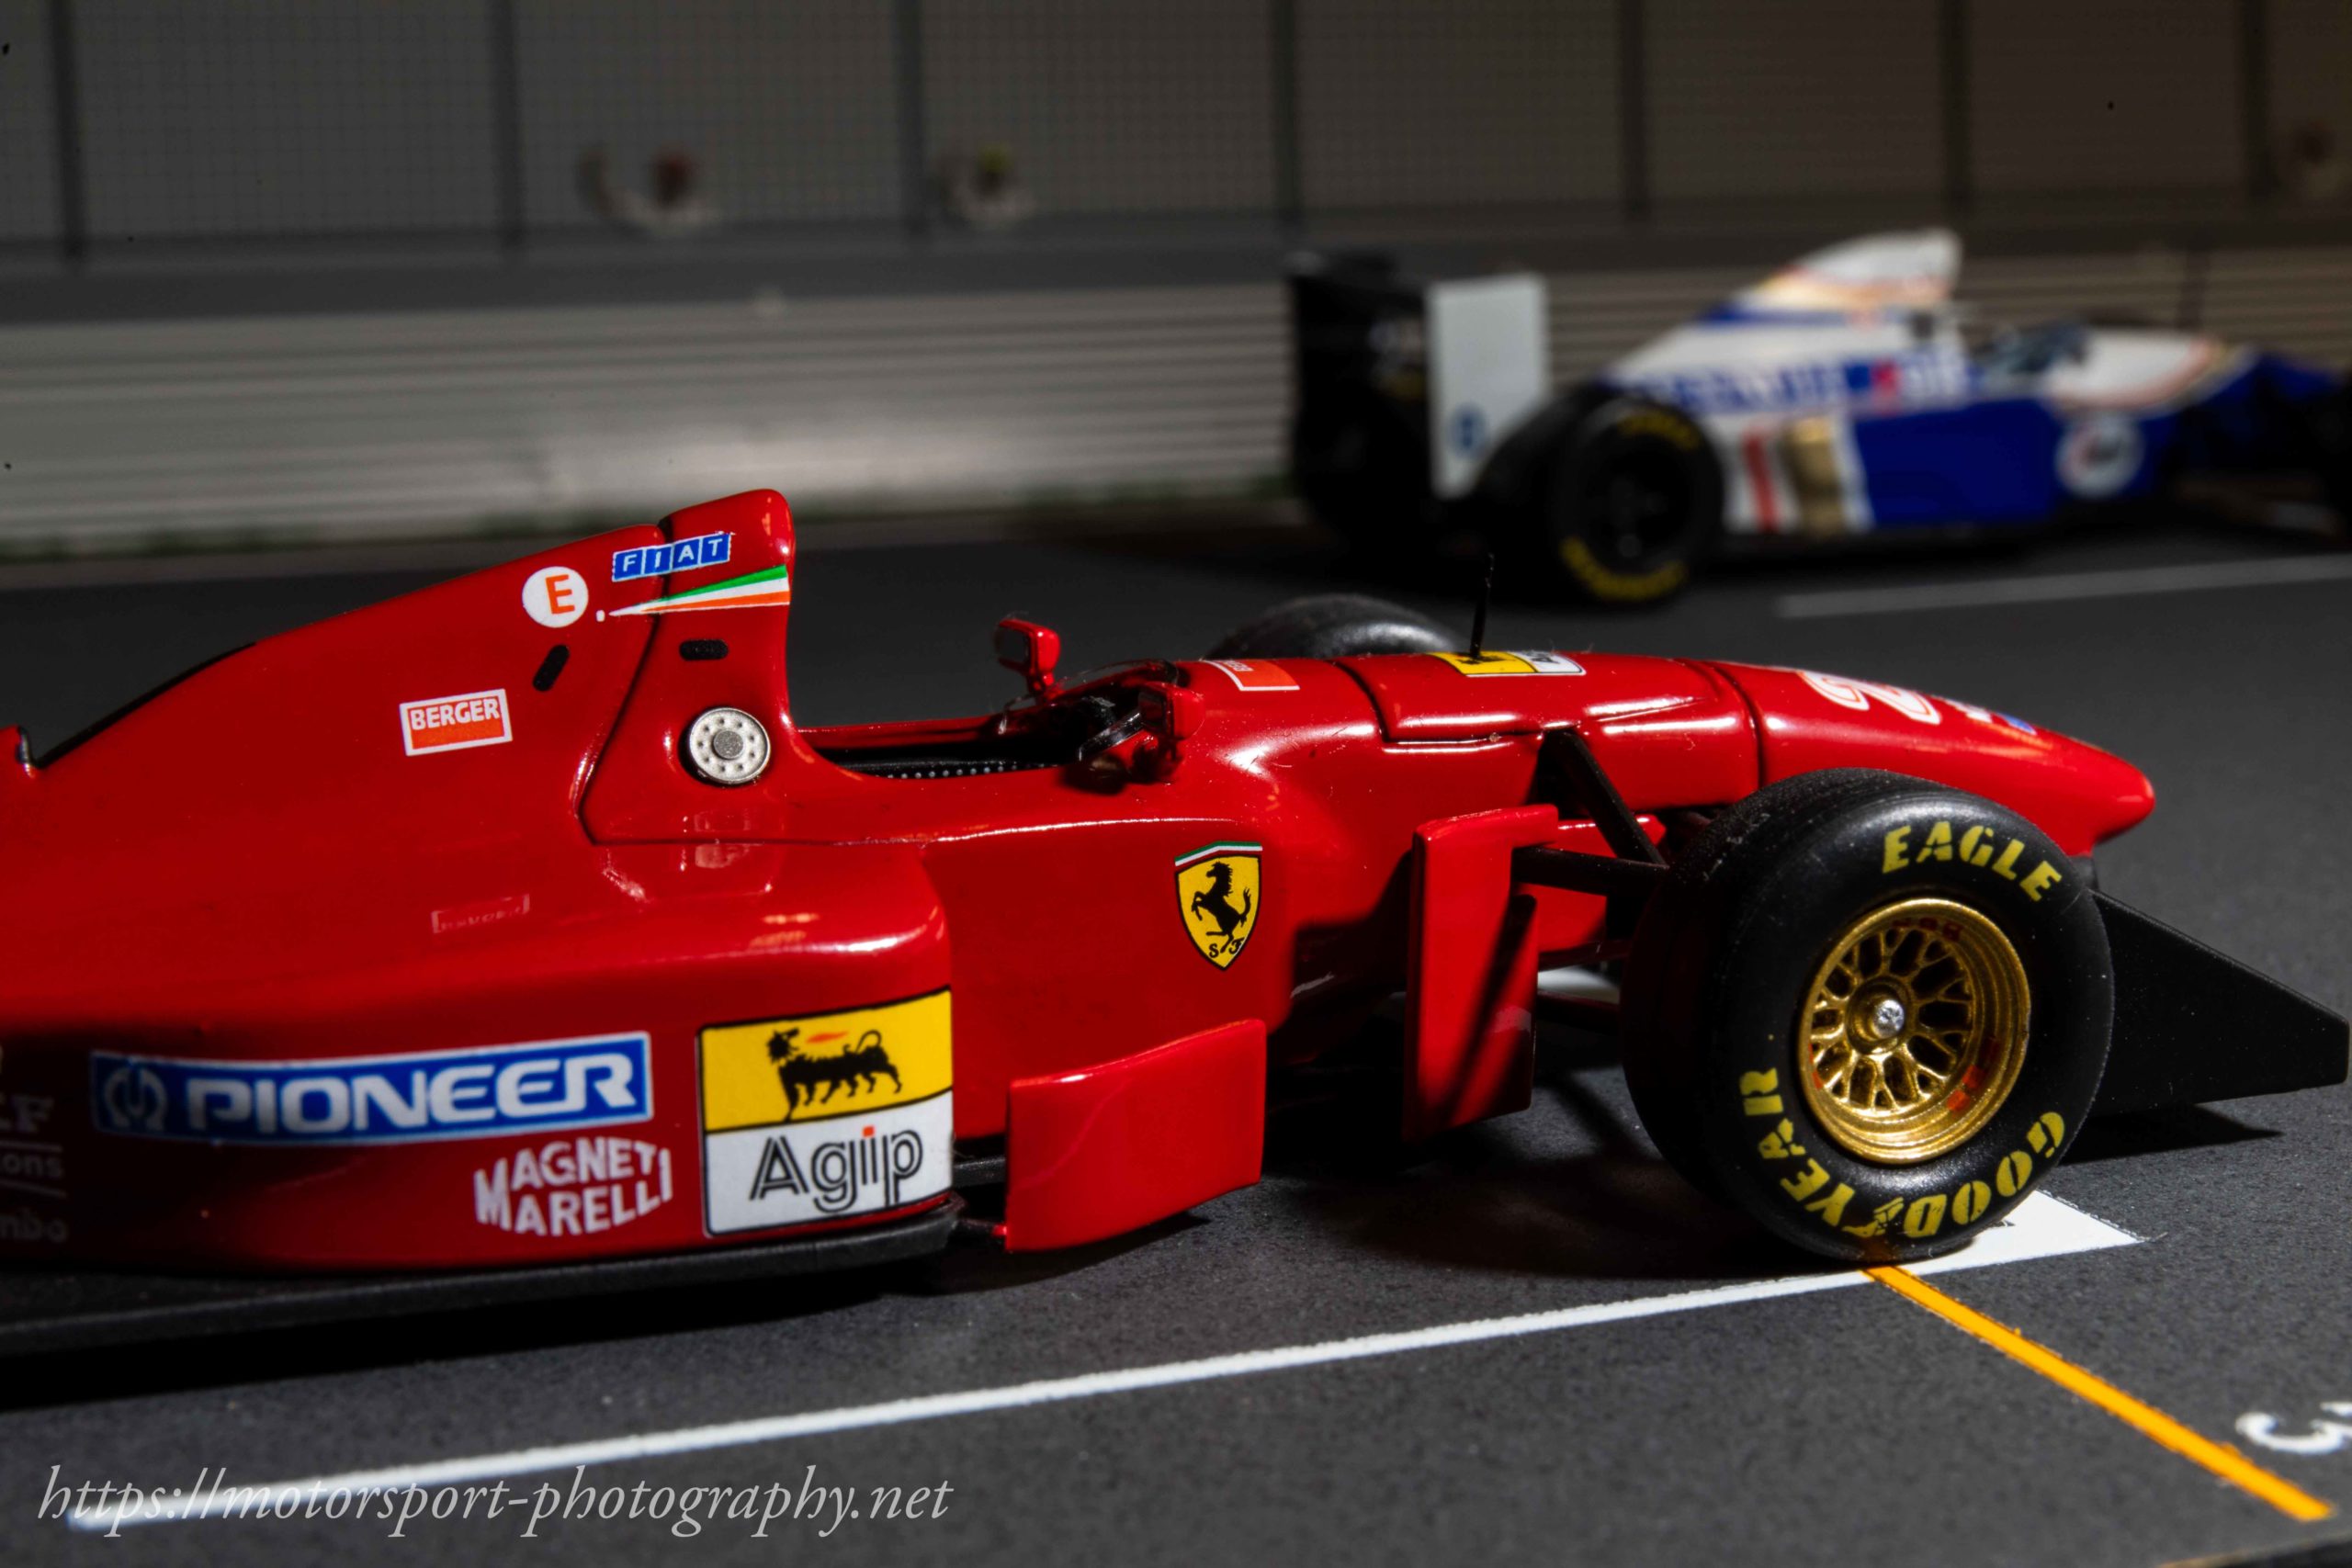 フェラーリ412T1 ベルガーがフェラーリに4年ぶりの優勝をもたらしたマシン【ミニカー#56】